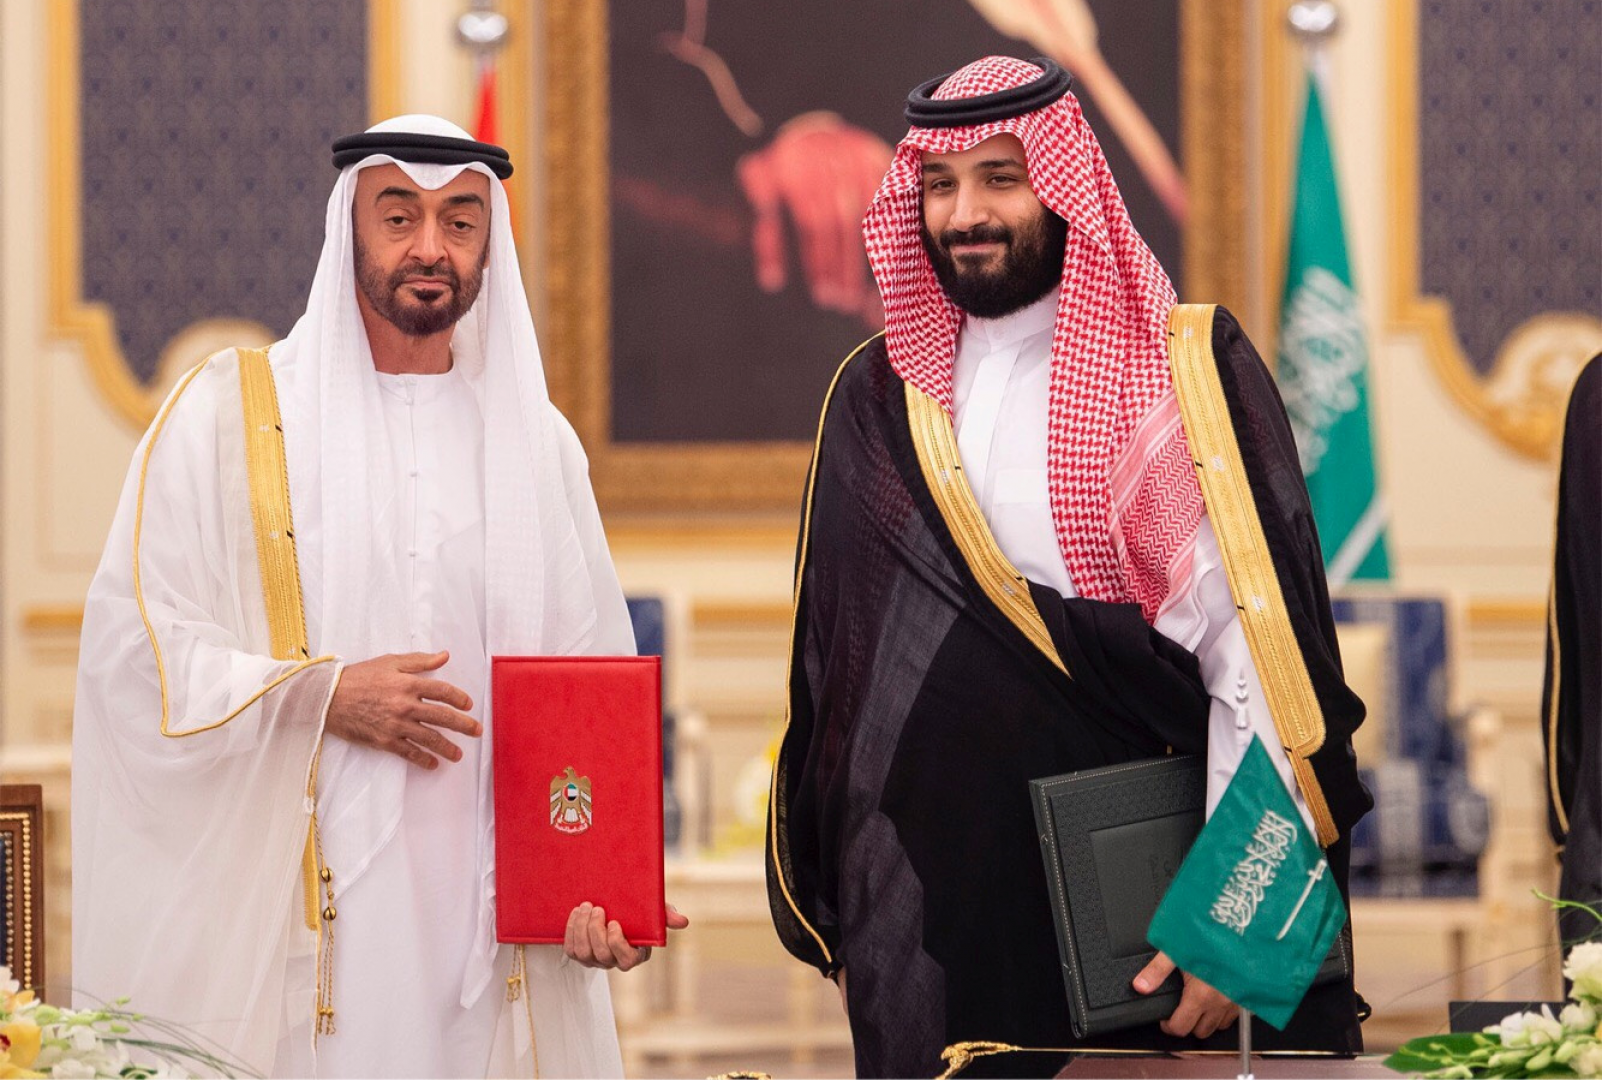 تقرير سري يفيد بأن العلاقات السعودية الإماراتية في خطر